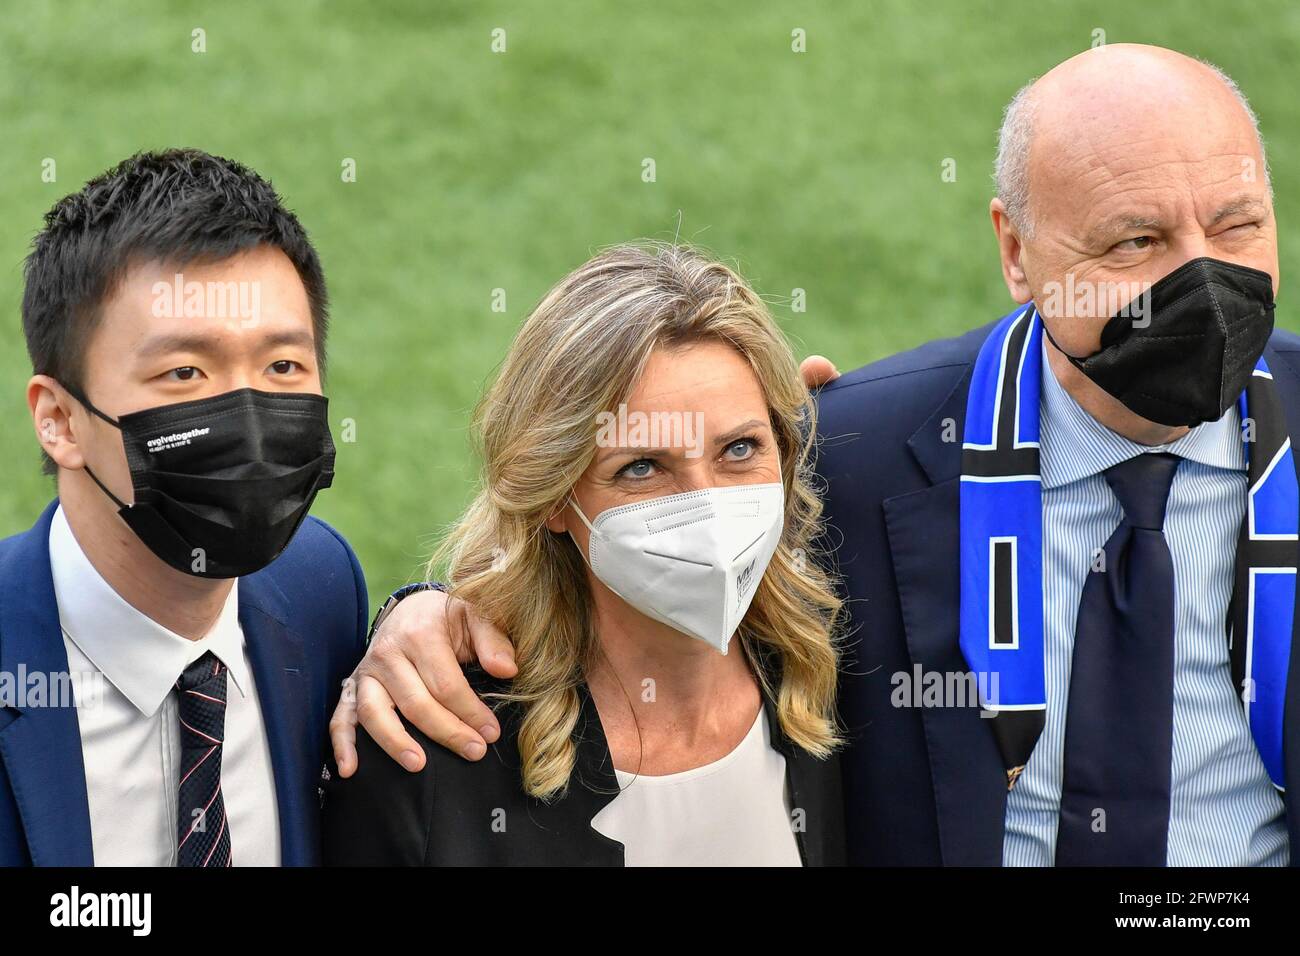 Steven Zhang, Valentina Vezzali e Giuseppe Marotta durante la serie A match tra FC Internazionale e Udinese Calcio allo stadio Giuseppe Meazza Foto Stock